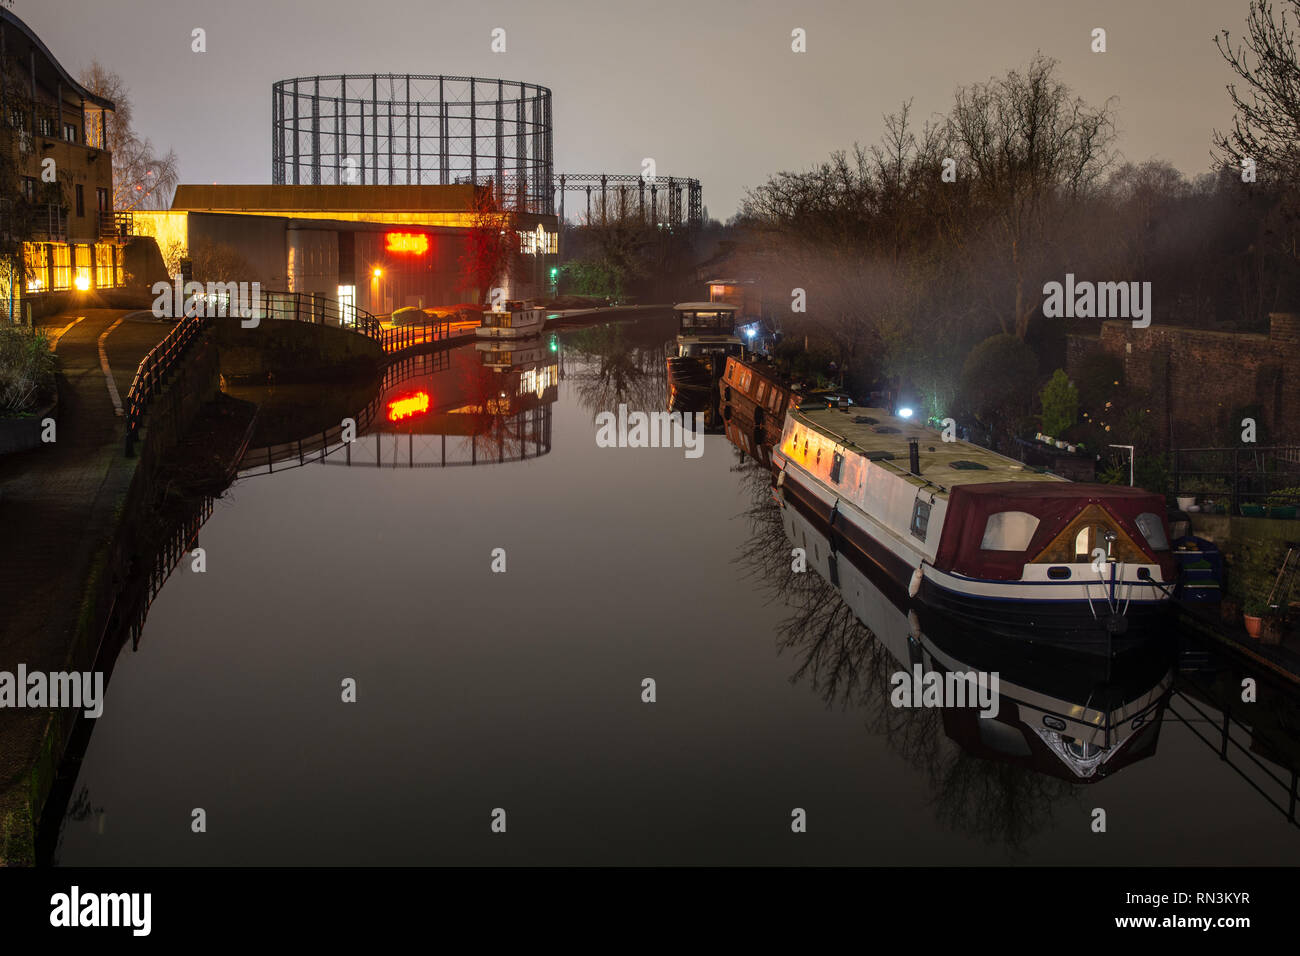 Londres, Angleterre, Royaume-Uni - 24 janvier 2019 : la fumée s'élève de bateaux amarrés sur le Grand Union Canal au nord de Kensington, avec le gasomet Kensal Green Banque D'Images